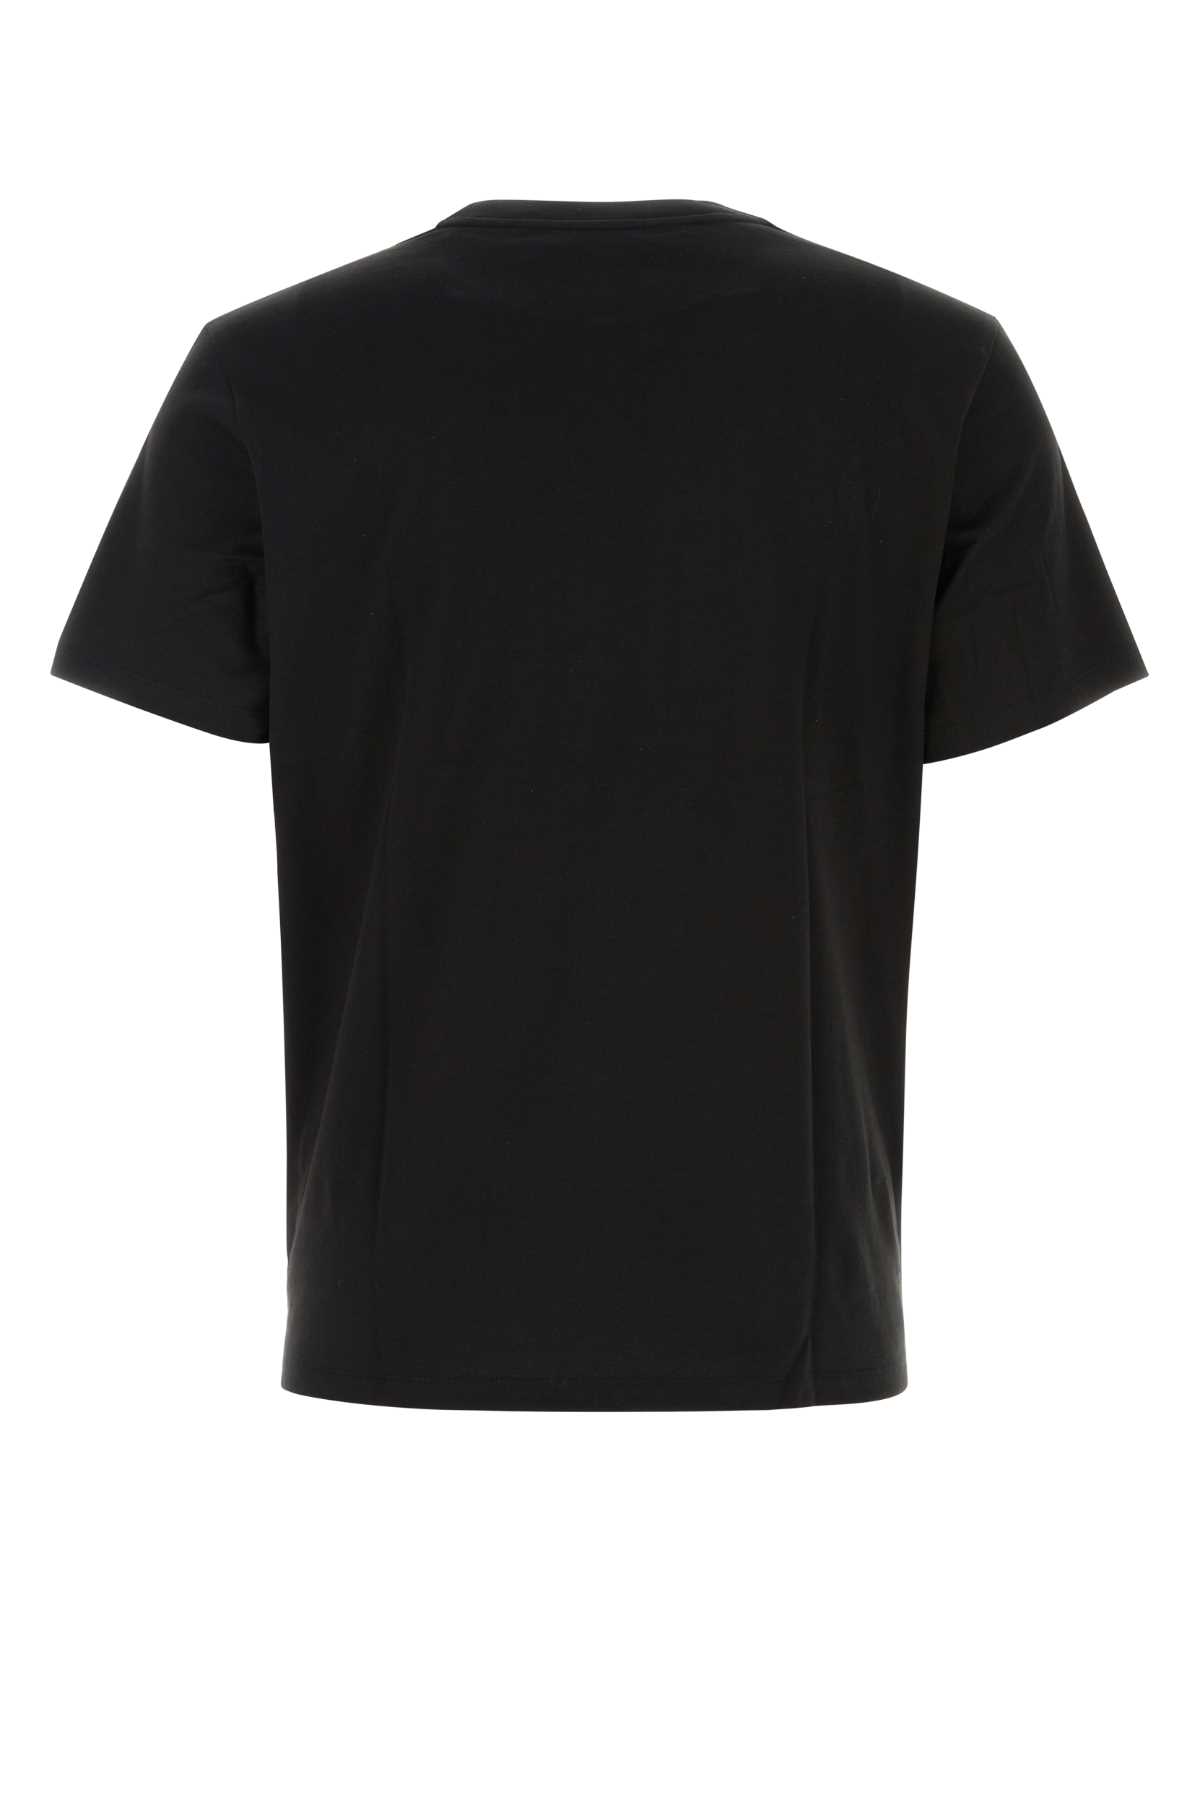 Mcm Black Cotton T-shirt